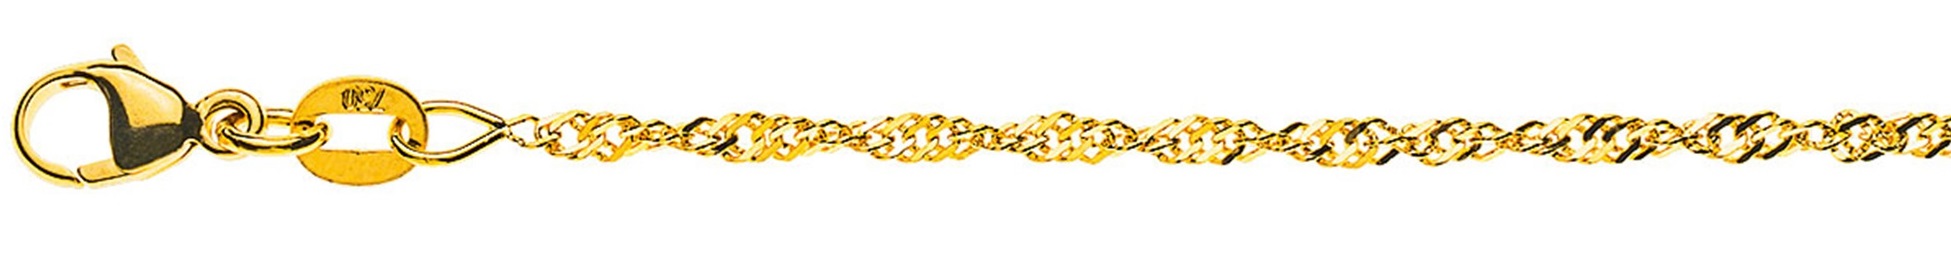 AURONOS Prestige Necklace Yellow Gold 18K Singapore Chain 50cm 1.9mm